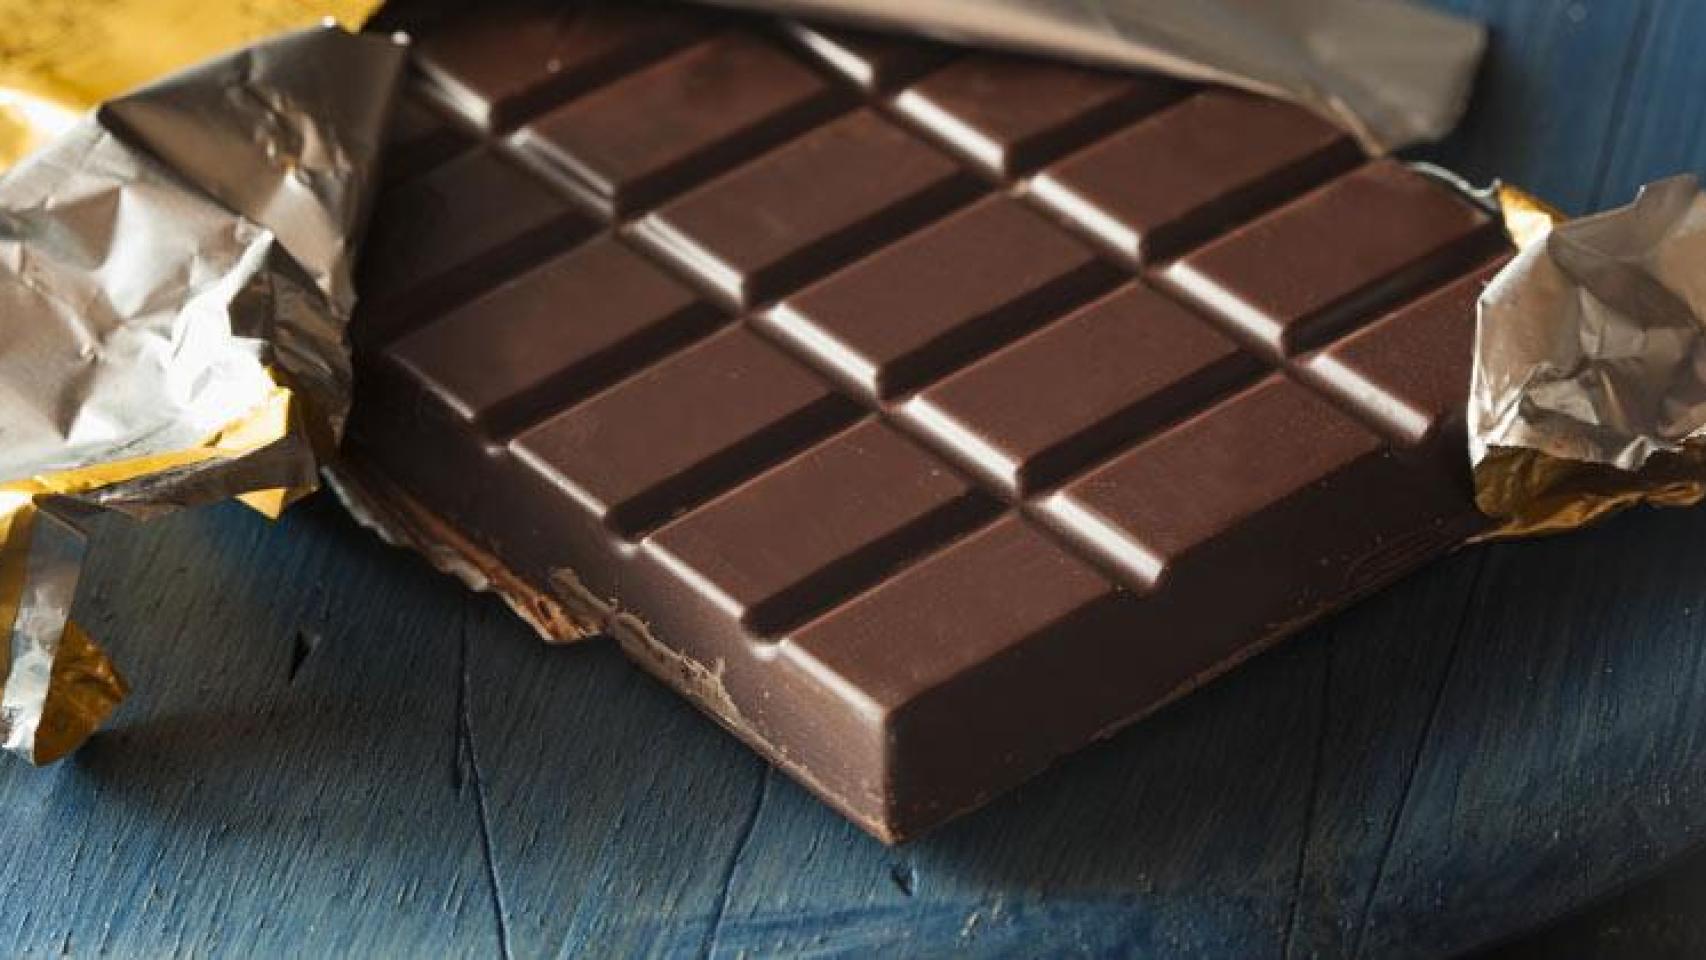 Valor Negro 85% cacao – 0% Azúcares añadidos – Conoce al chocolate